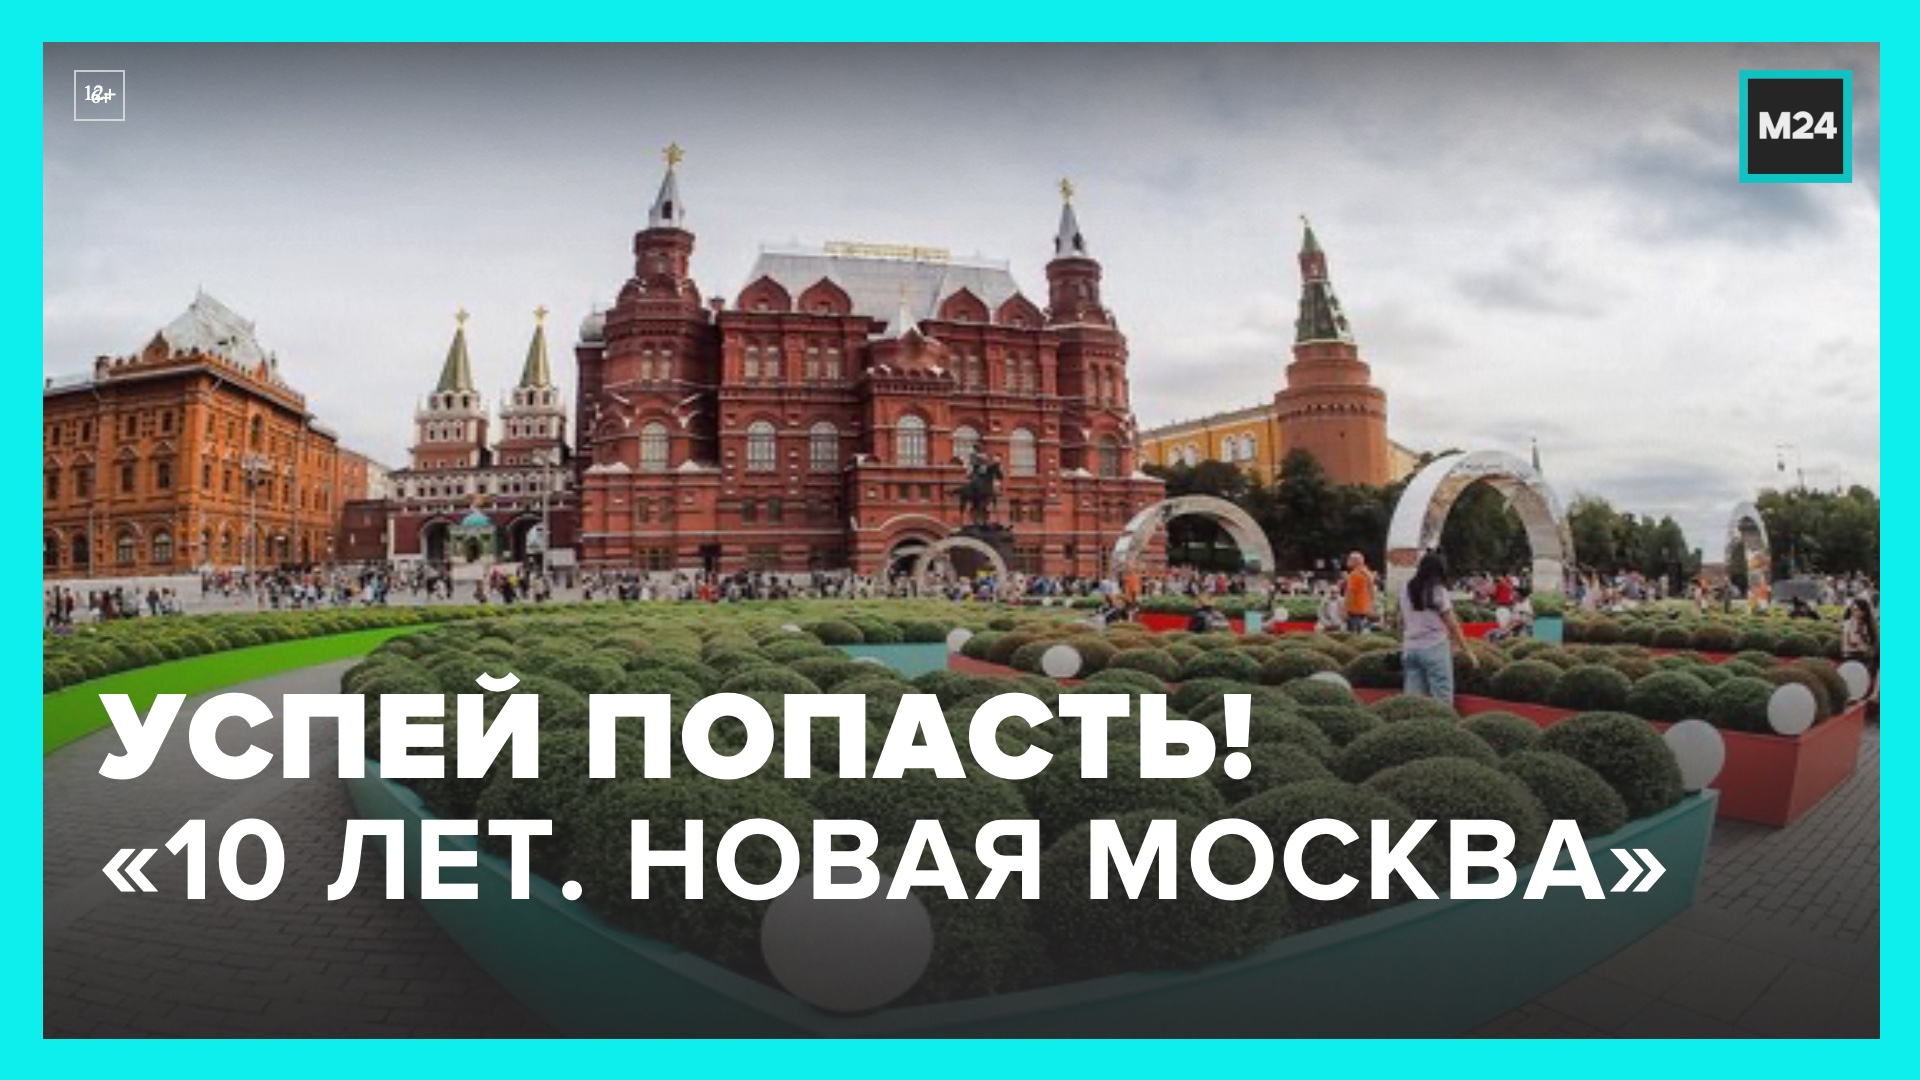 Фестиваль "10 лет. Новая Москва"  завершится на Манежной площади 10 июля – Москва 24